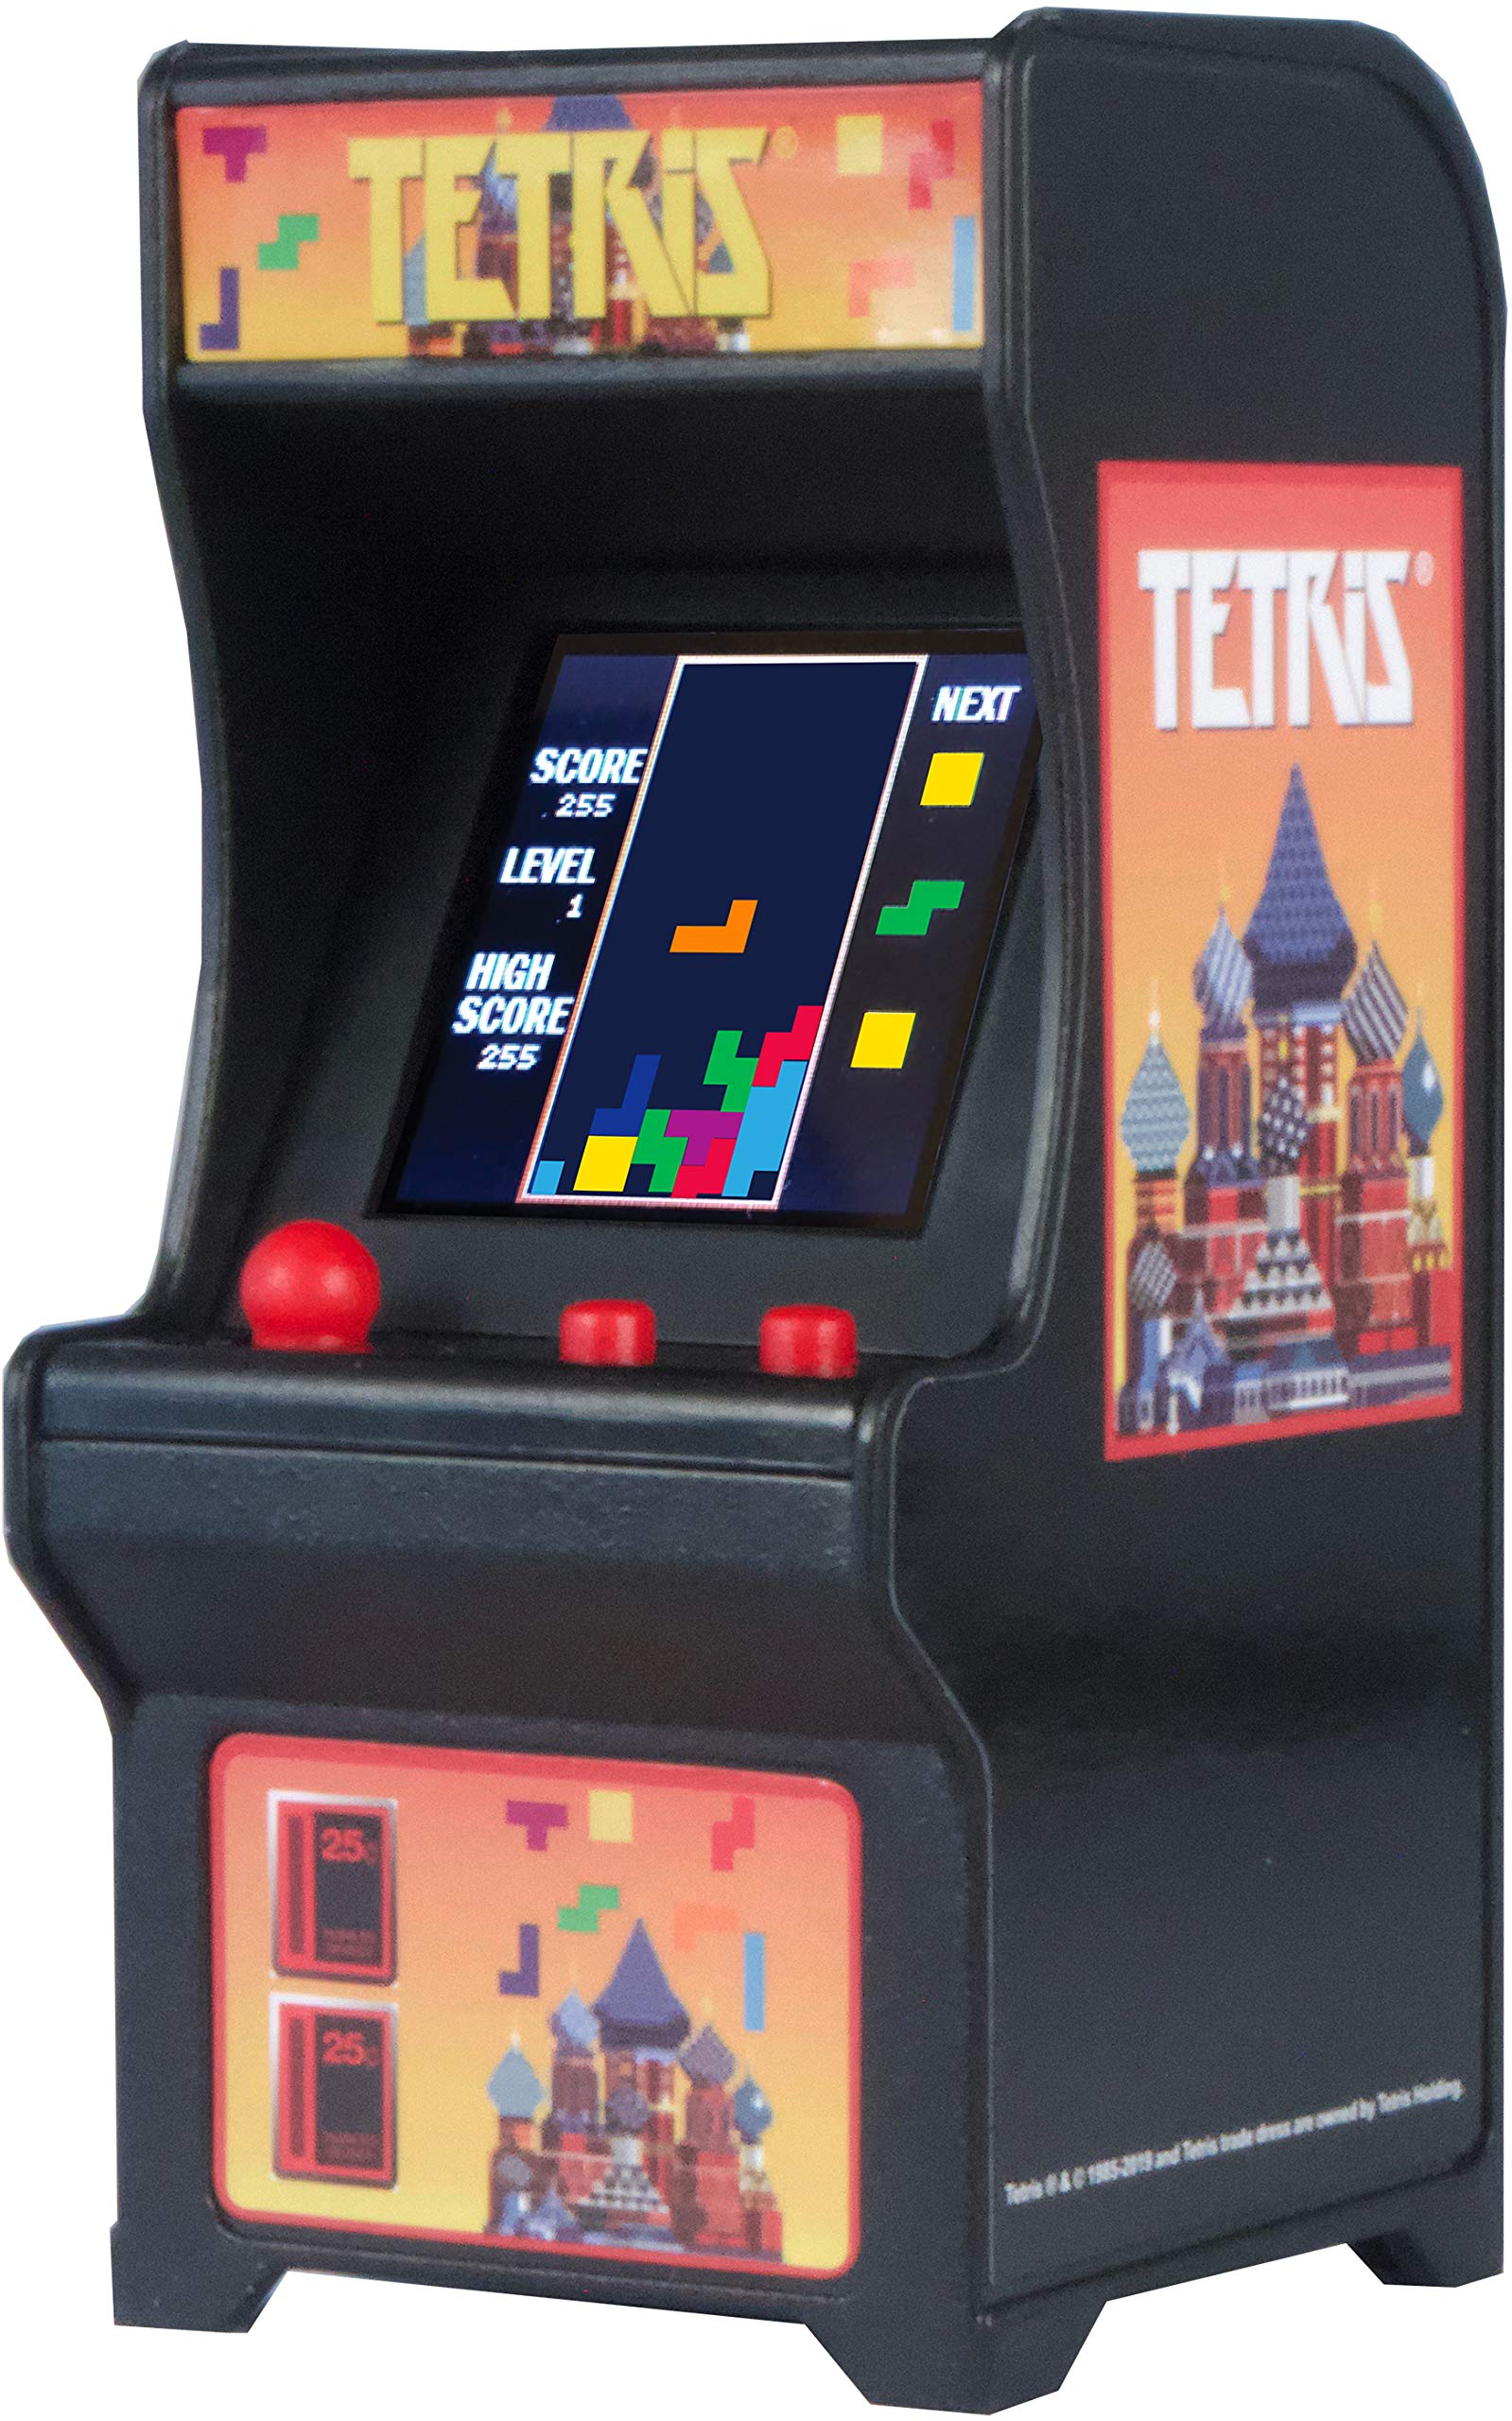 Tutustu 70+ imagen tetris arcade game